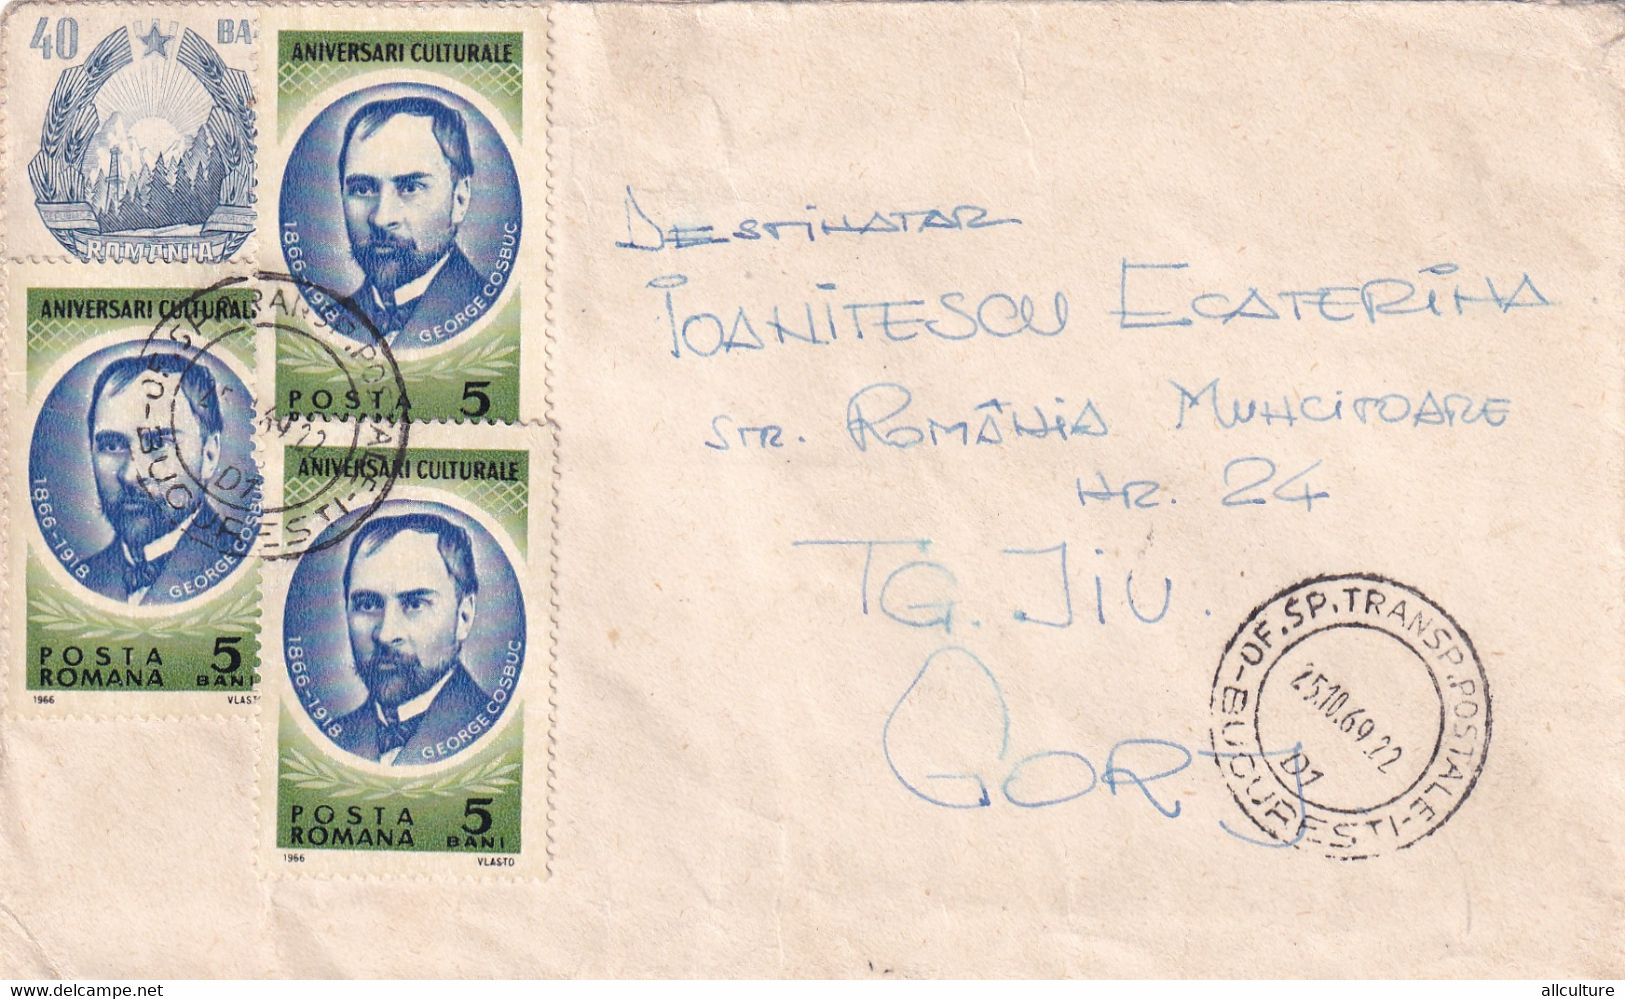 A3013 - Aniversari Culturale Posta Romana, Bucuresti Targu Jiu 1969 Republica Socialista Romania - Covers & Documents